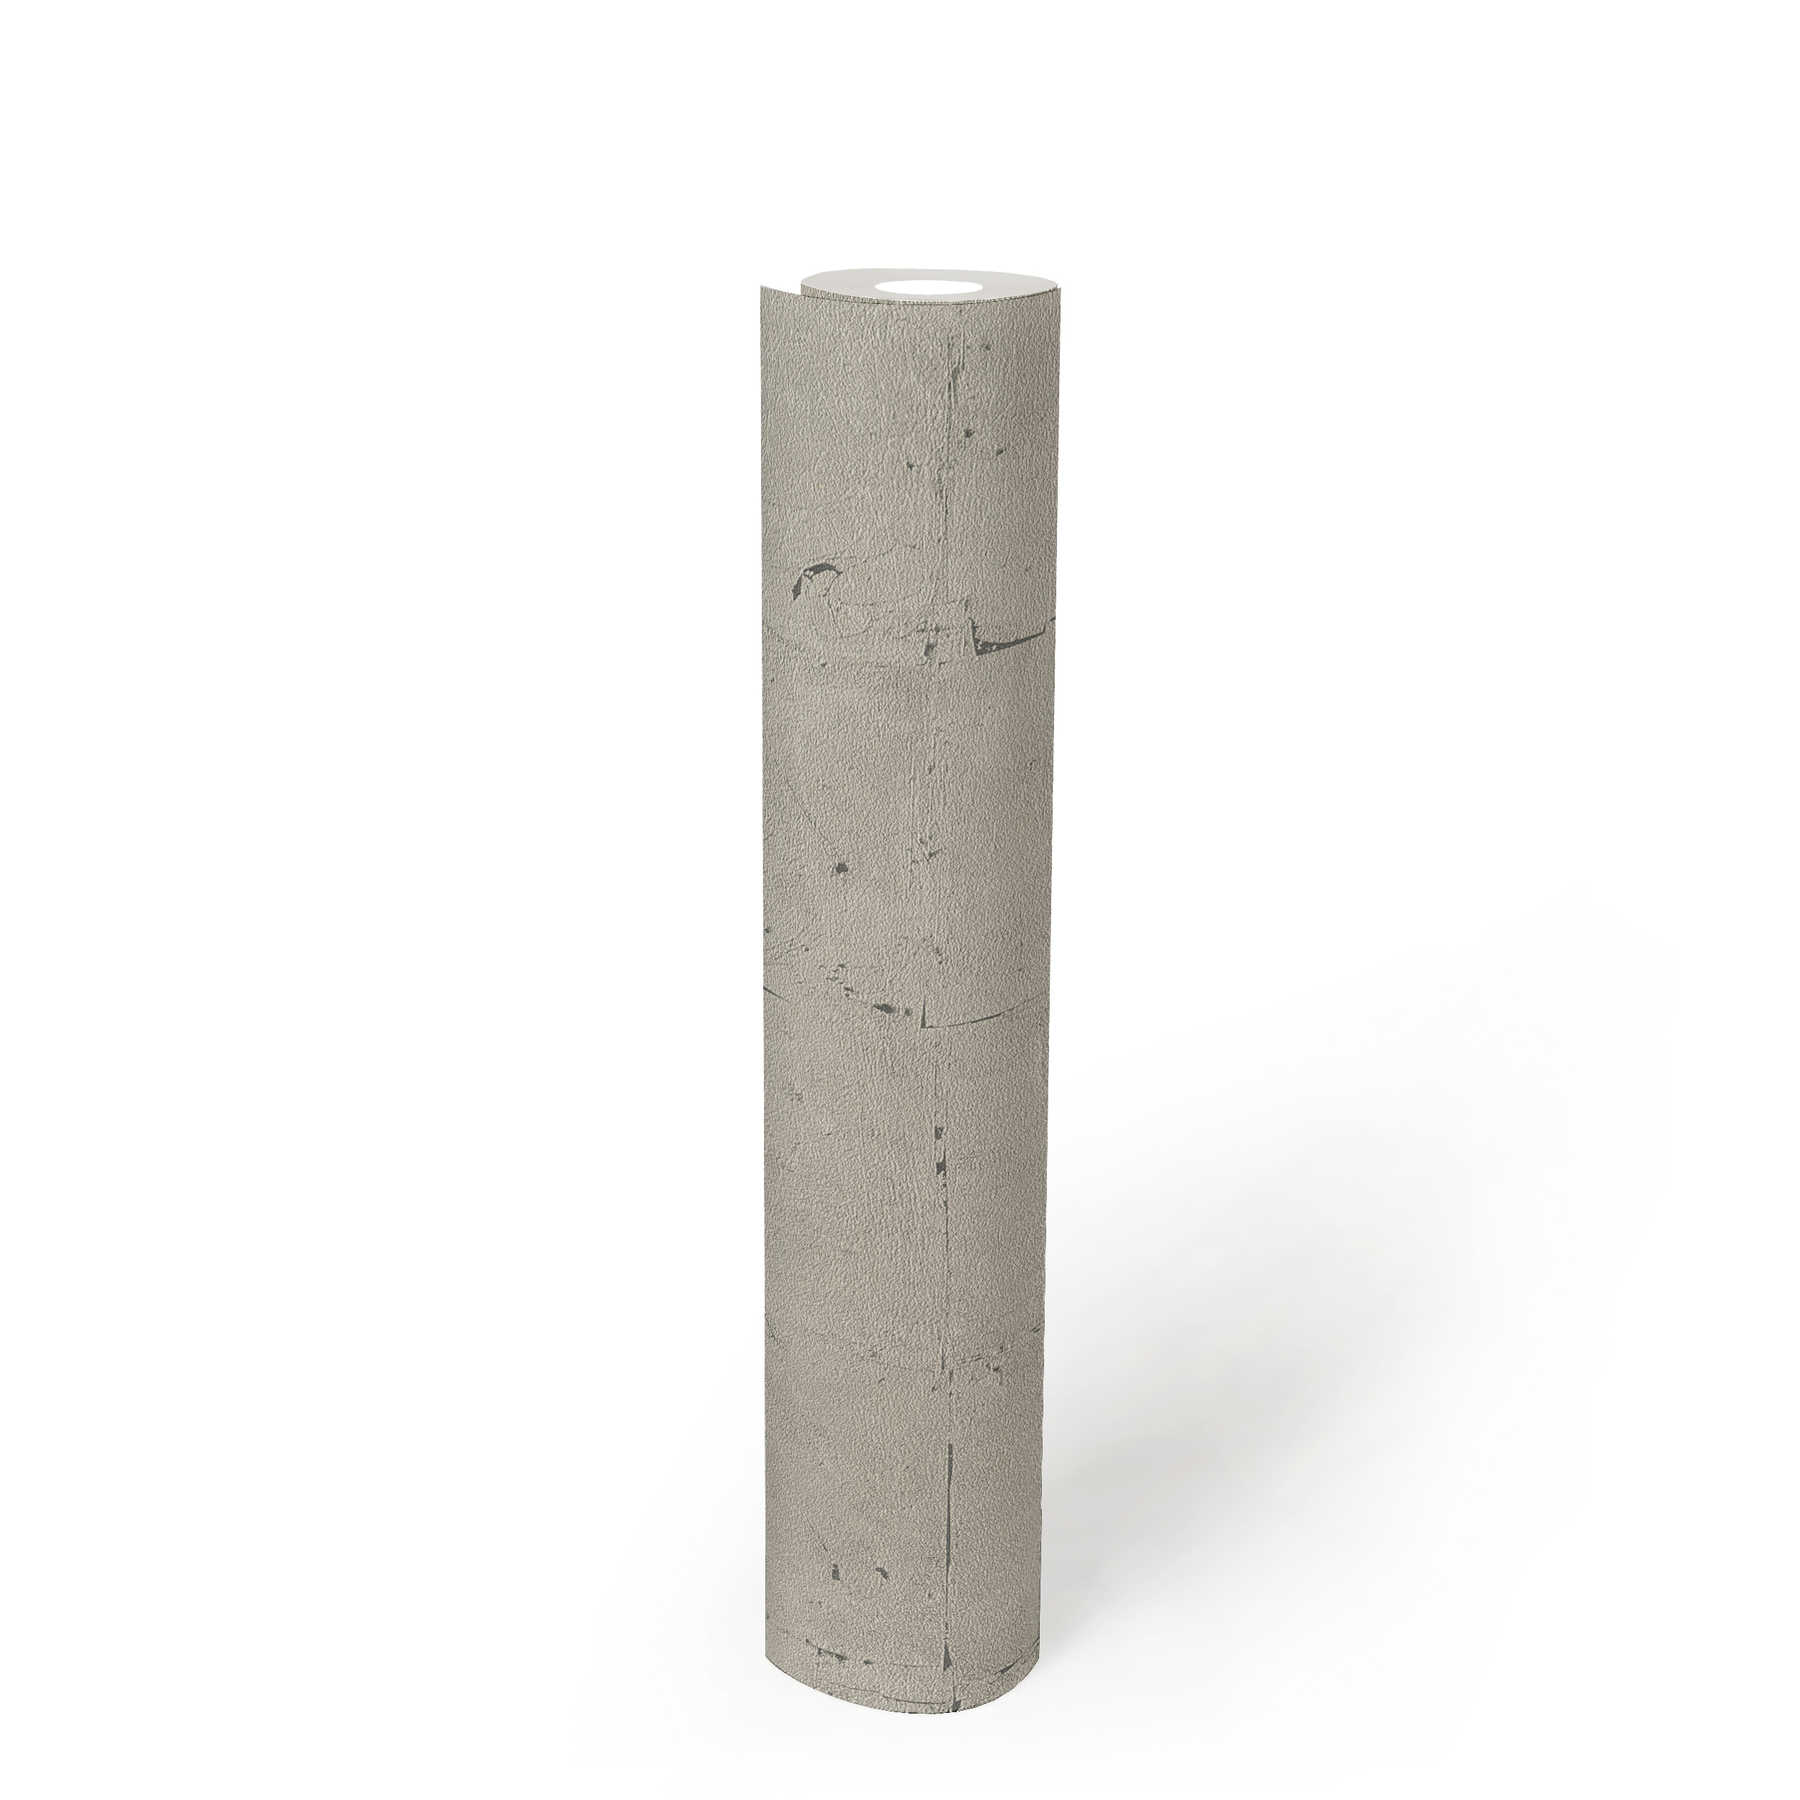             Papier peint imitation pierre avec motifs structurés - gris, beige
        